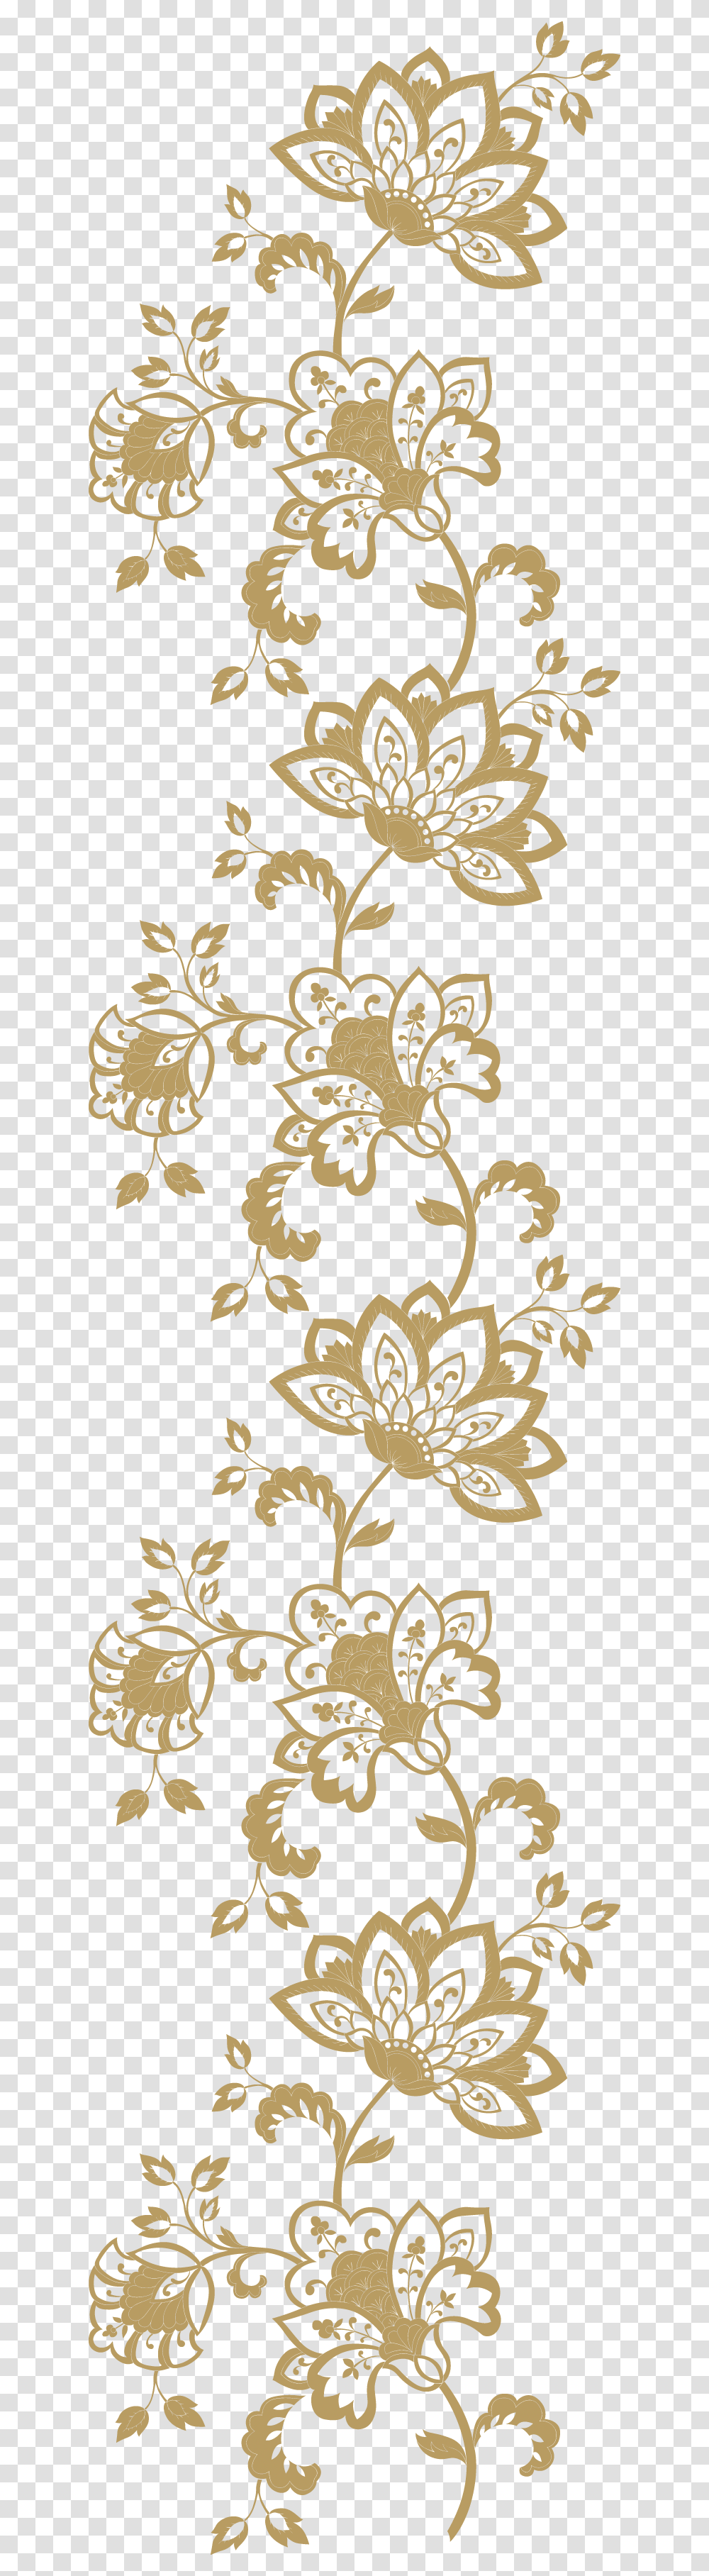 Golden Gold Borders Border Frames Frame Floral Golden Lace Sticker, Floral Design, Pattern Transparent Png